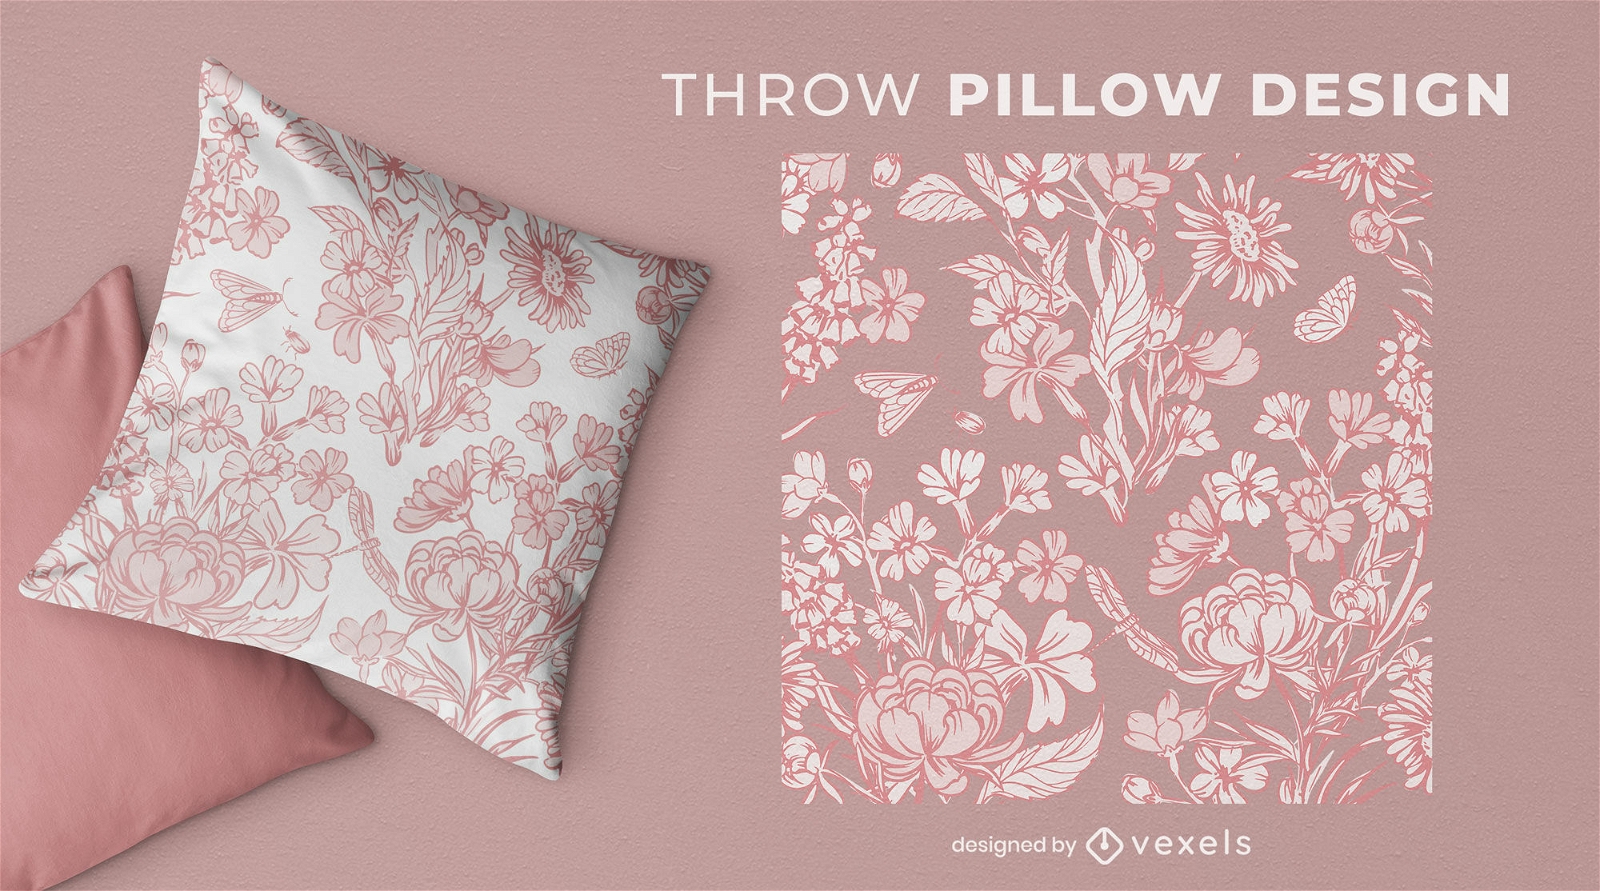 Monochrome floral throw pillow design